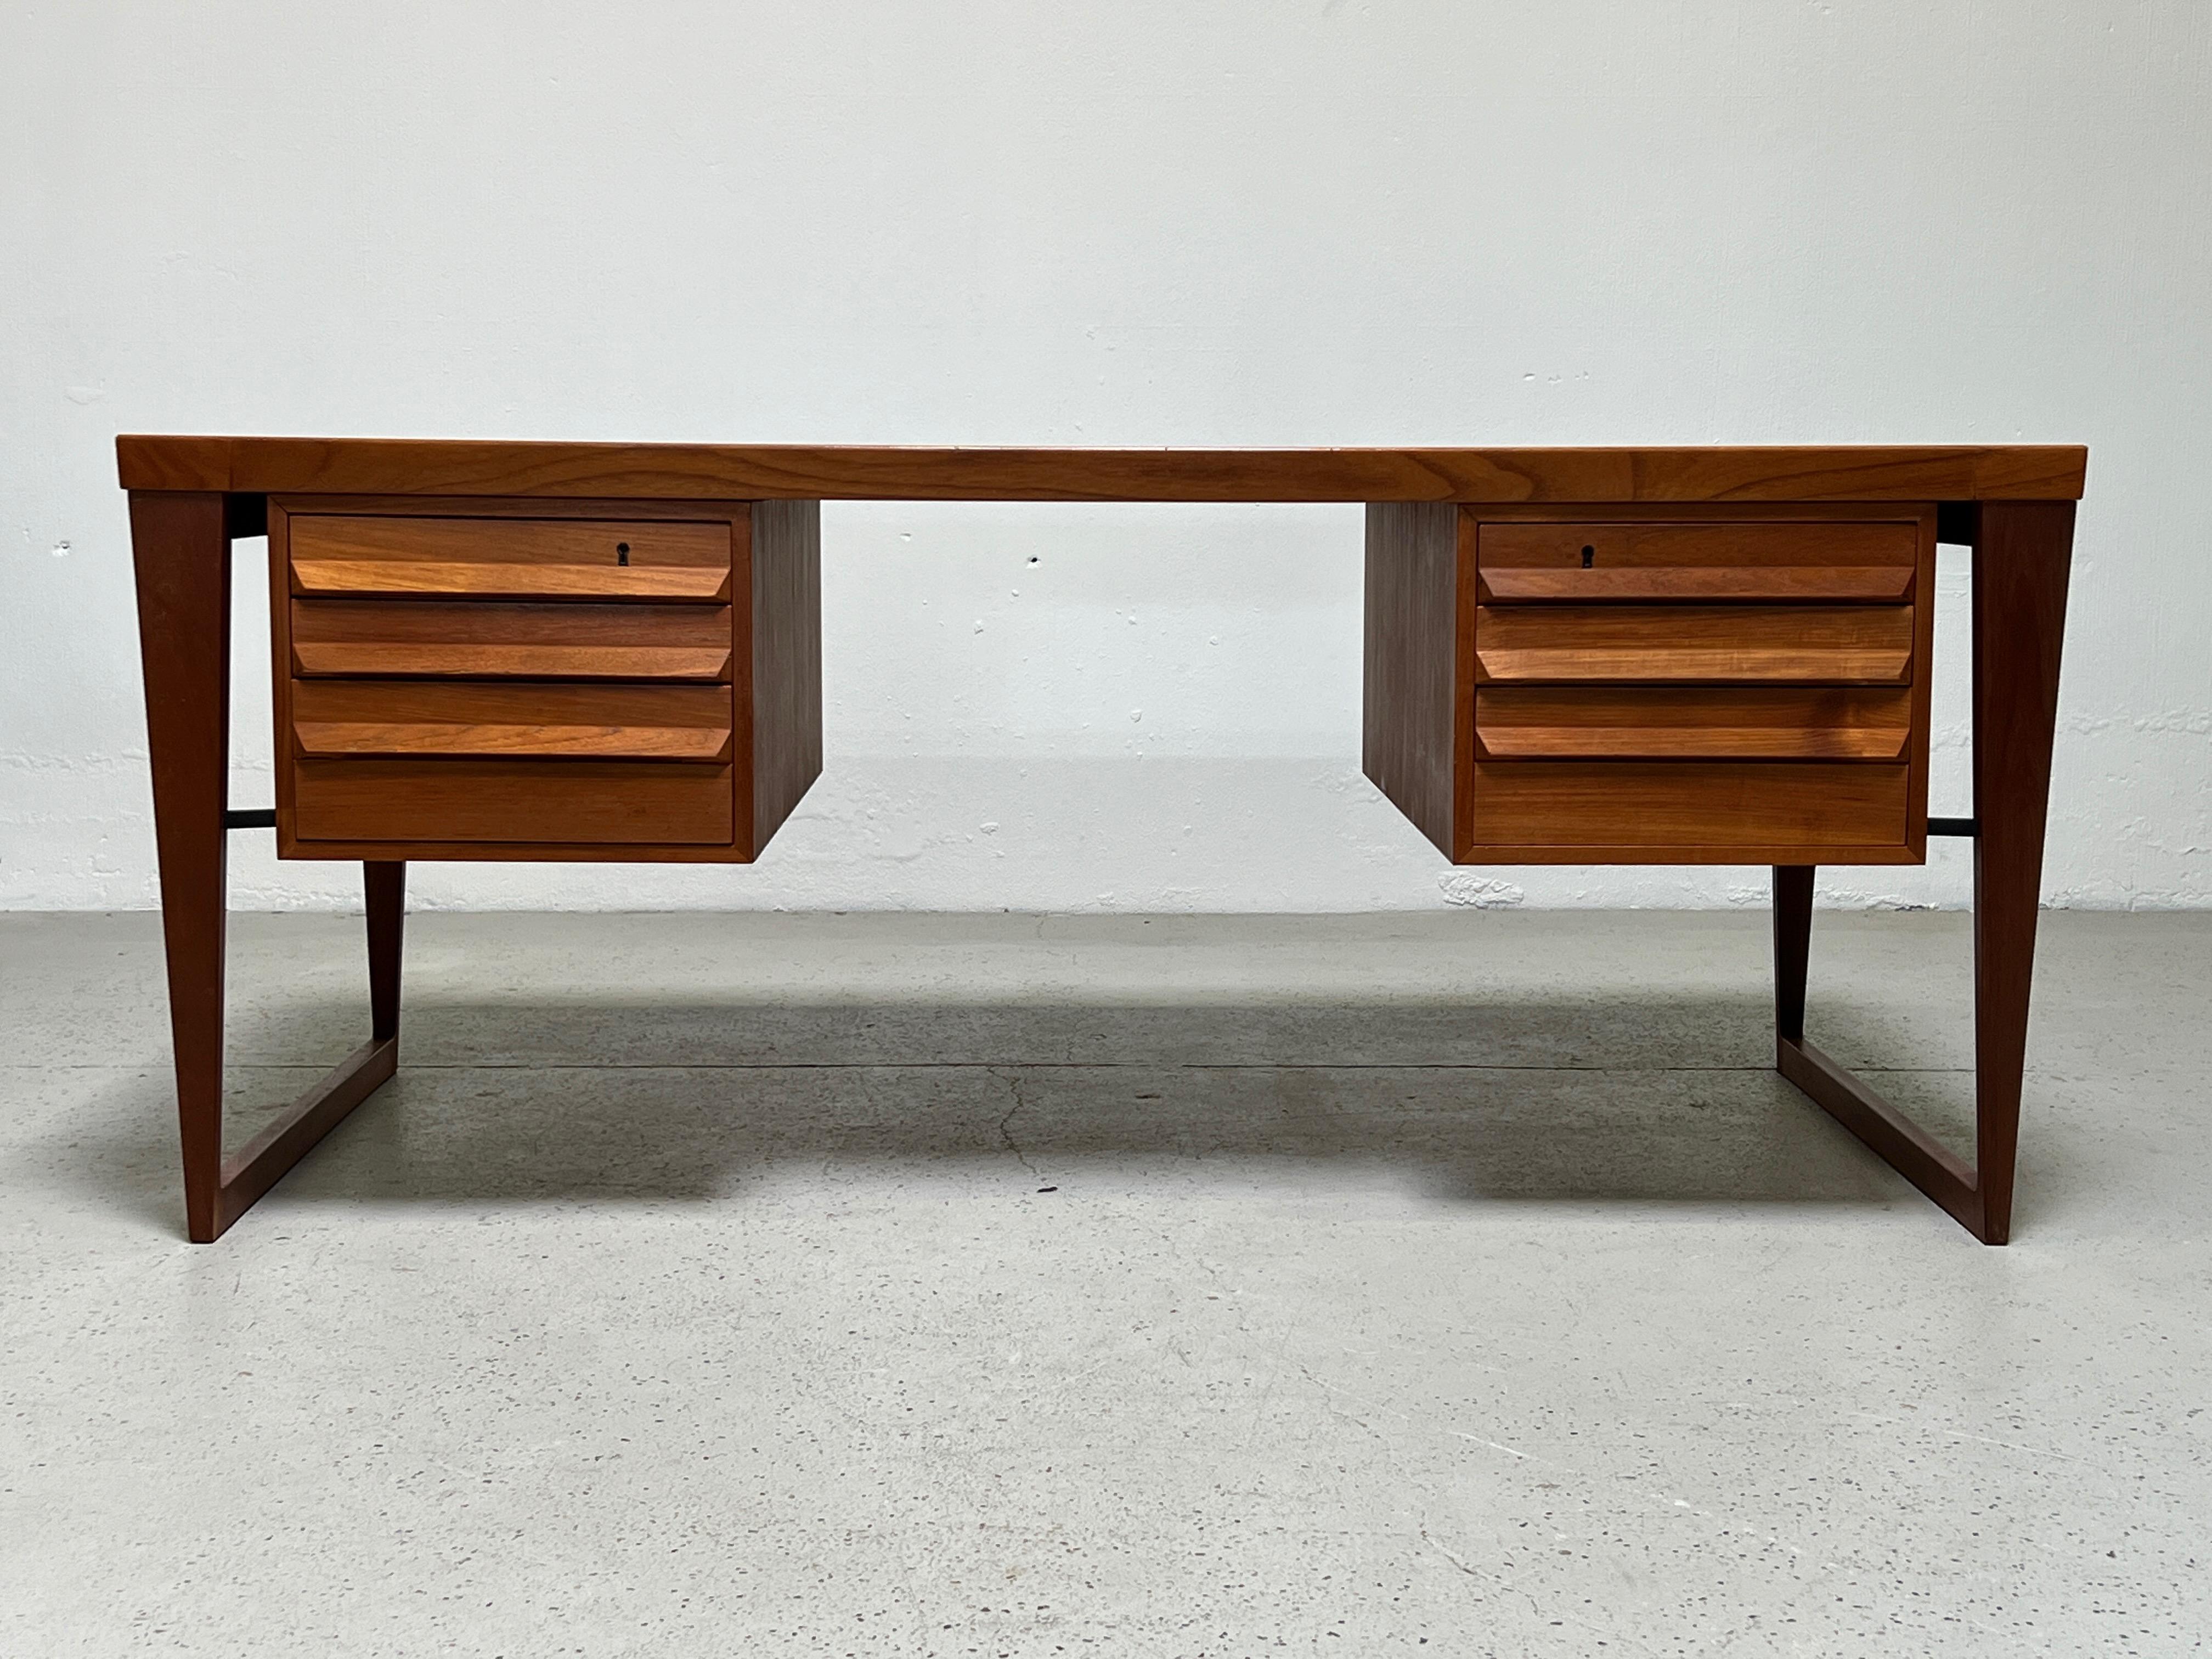 A large teak desk model no 70 designed by Kai Kristiansen for Feldballes Møbelfabrik.